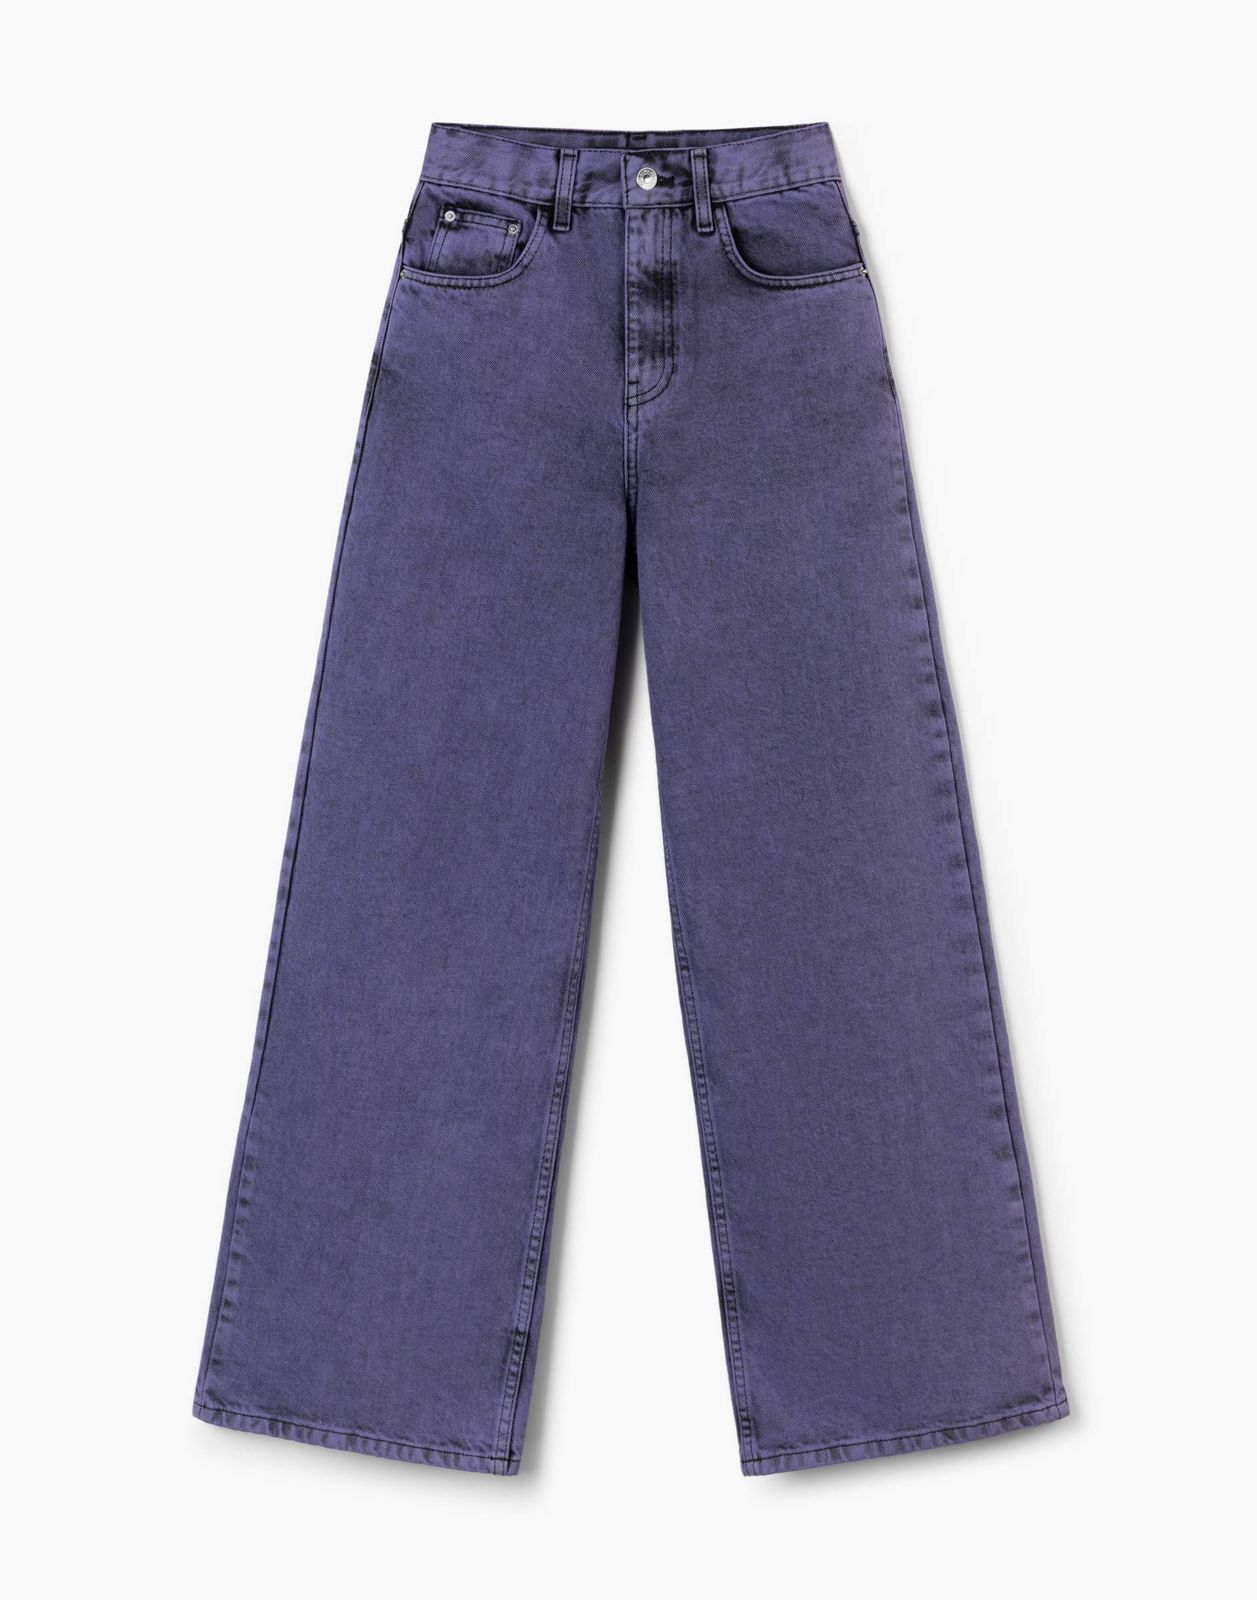 Джинсы детские Gloria Jeans GJN031150, черный/фиолетовый, 128 джинсы gloria jeans gjn031147 фиолетовый 10 12л 152